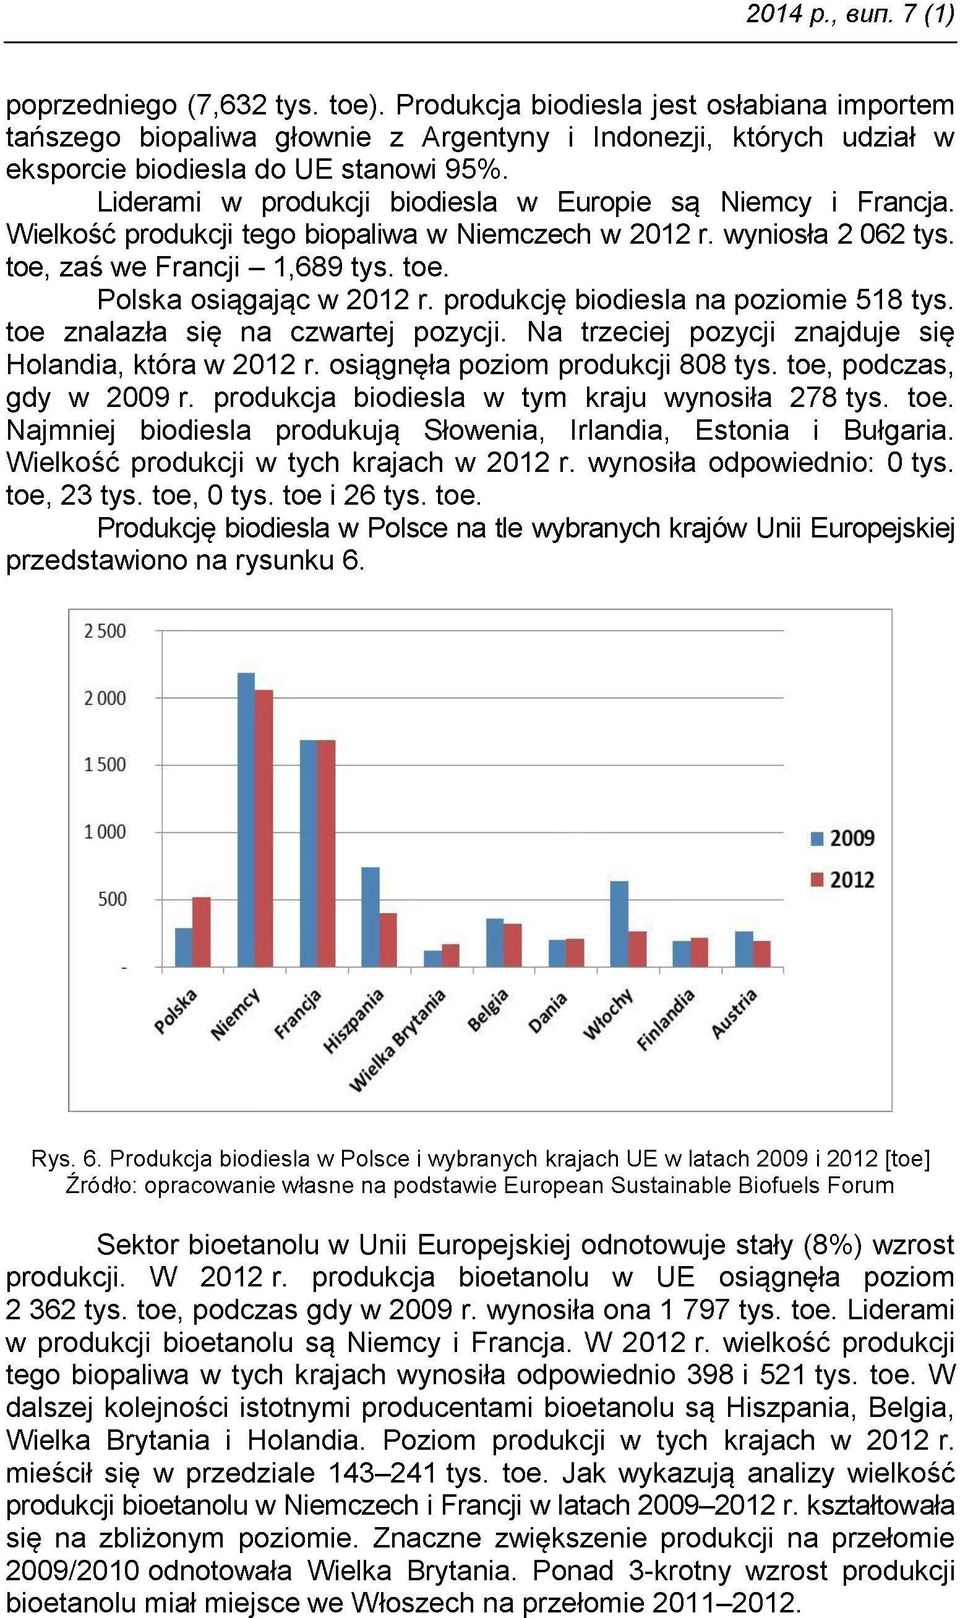 Liderami w produkcji biodiesla w Europie są Niemcy i Francja. Wielkość produkcji tego biopaliwa w Niemczech w 2012 r. wyniosła 2 062 tys. toe, zaś we Francji 1,689 tys. toe. Polska osiągając w 2012 r.